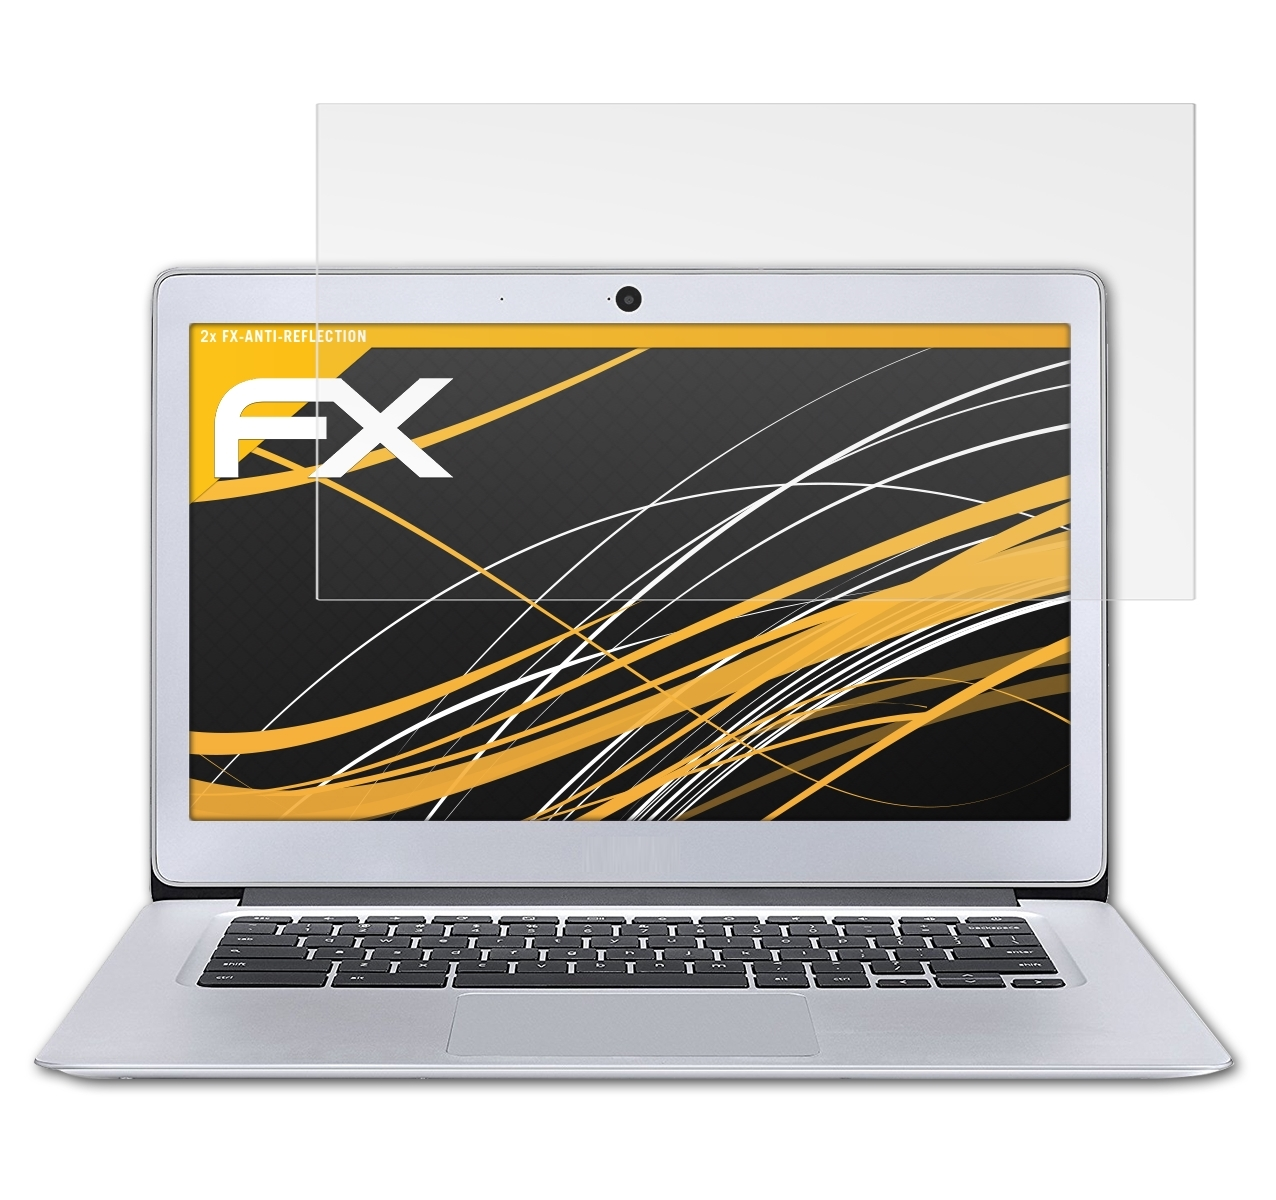 ATFOLIX 2x FX-Antireflex Displayschutz(für Acer 14 (CB3-431)) Chromebook